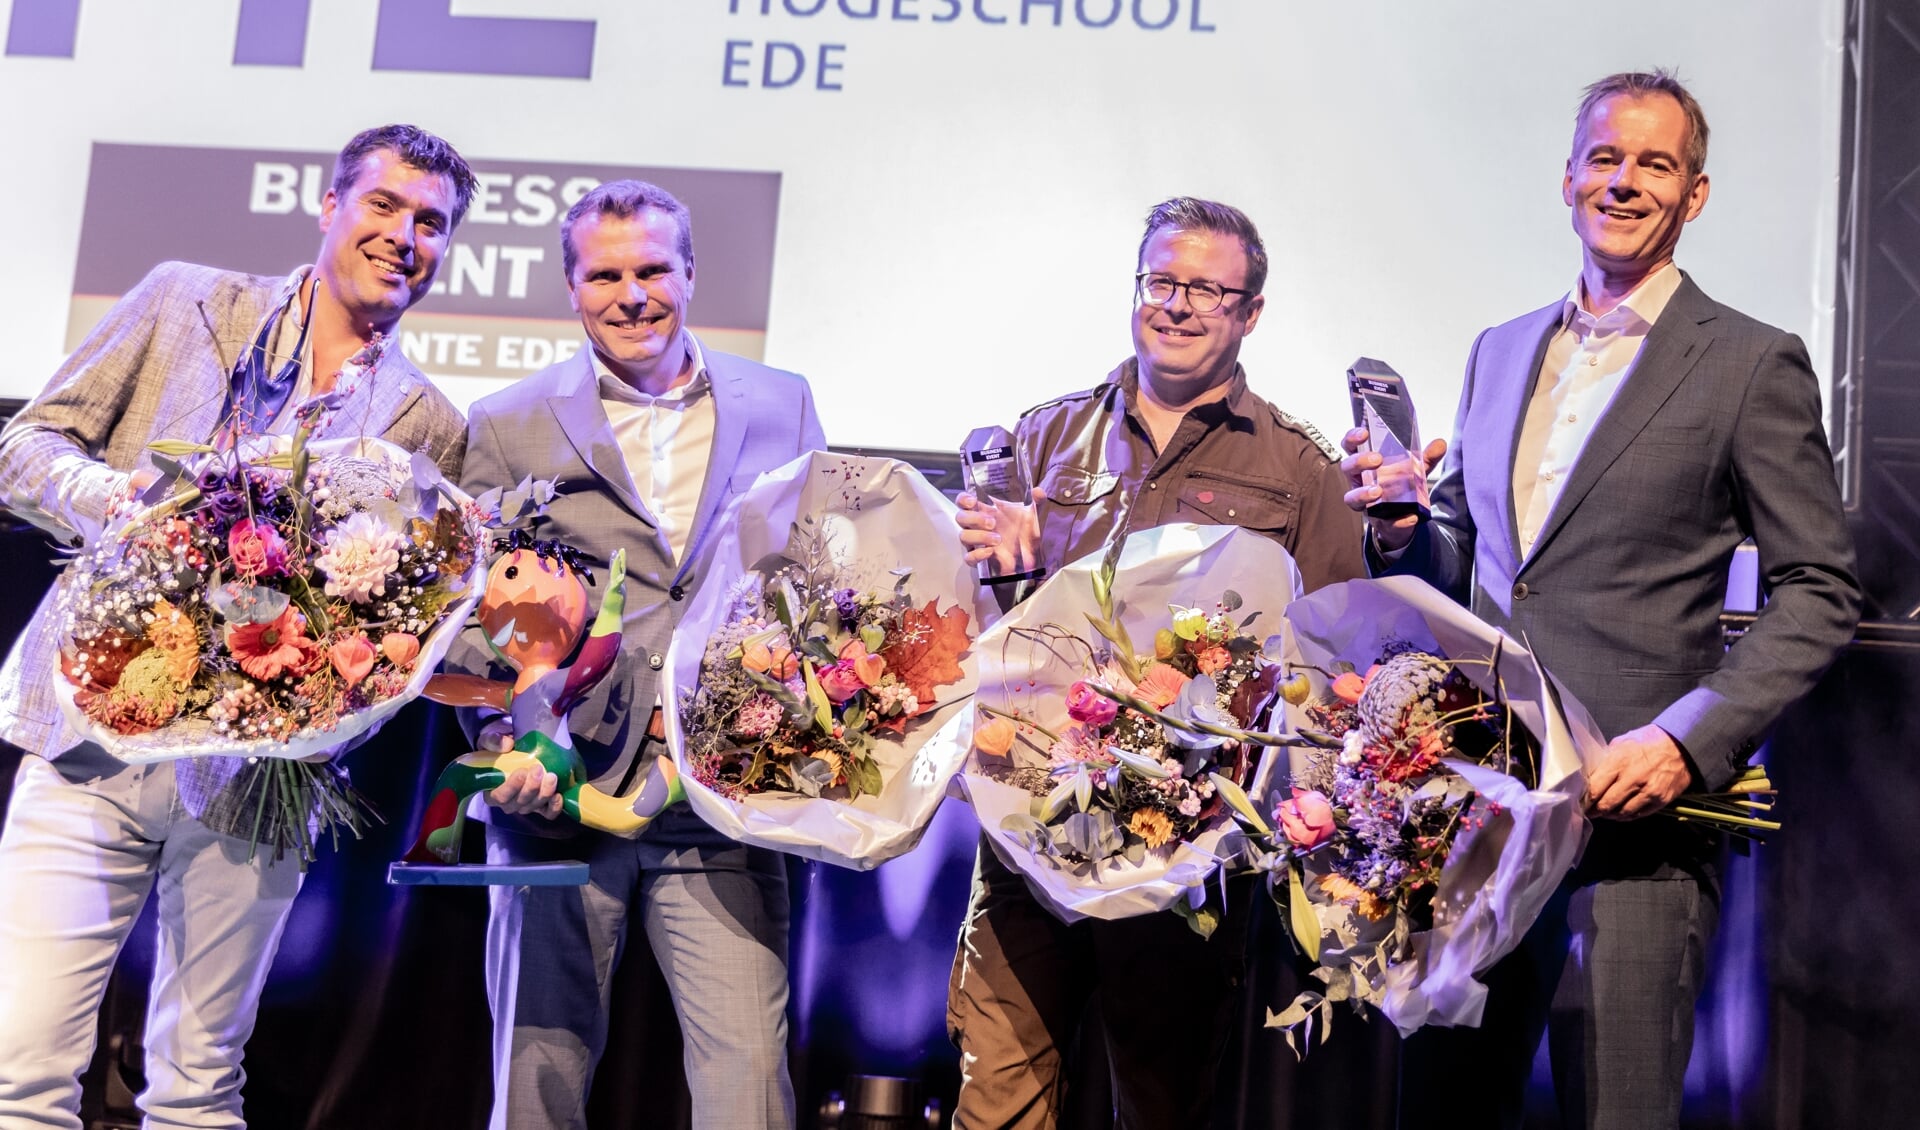 De winnaars van het Business Event gemeente Ede 2018. Van links naar rechts: Albert Meeuwissen (Albers Zeilmakerij), Harry Brouwer (Emri Services), Leendert Houweling (dierenpreparateur) en Hans Bom (hotel De Sterrenberg).